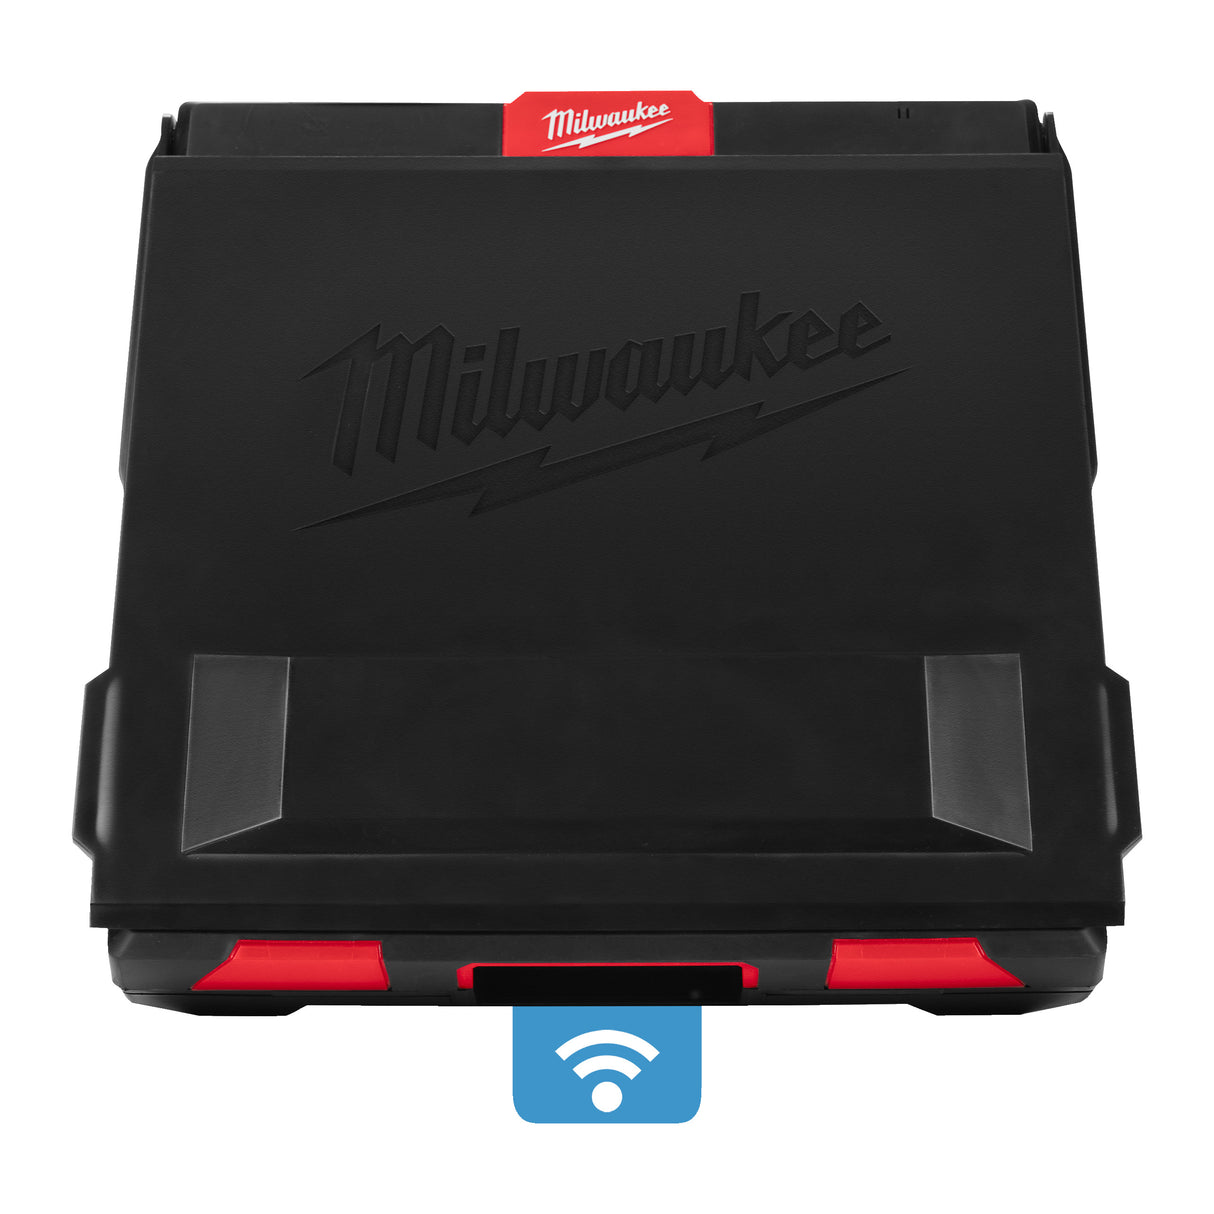 Milwaukee Akku-Monitor M18SIM-0 4933471414 roteswerkzeug